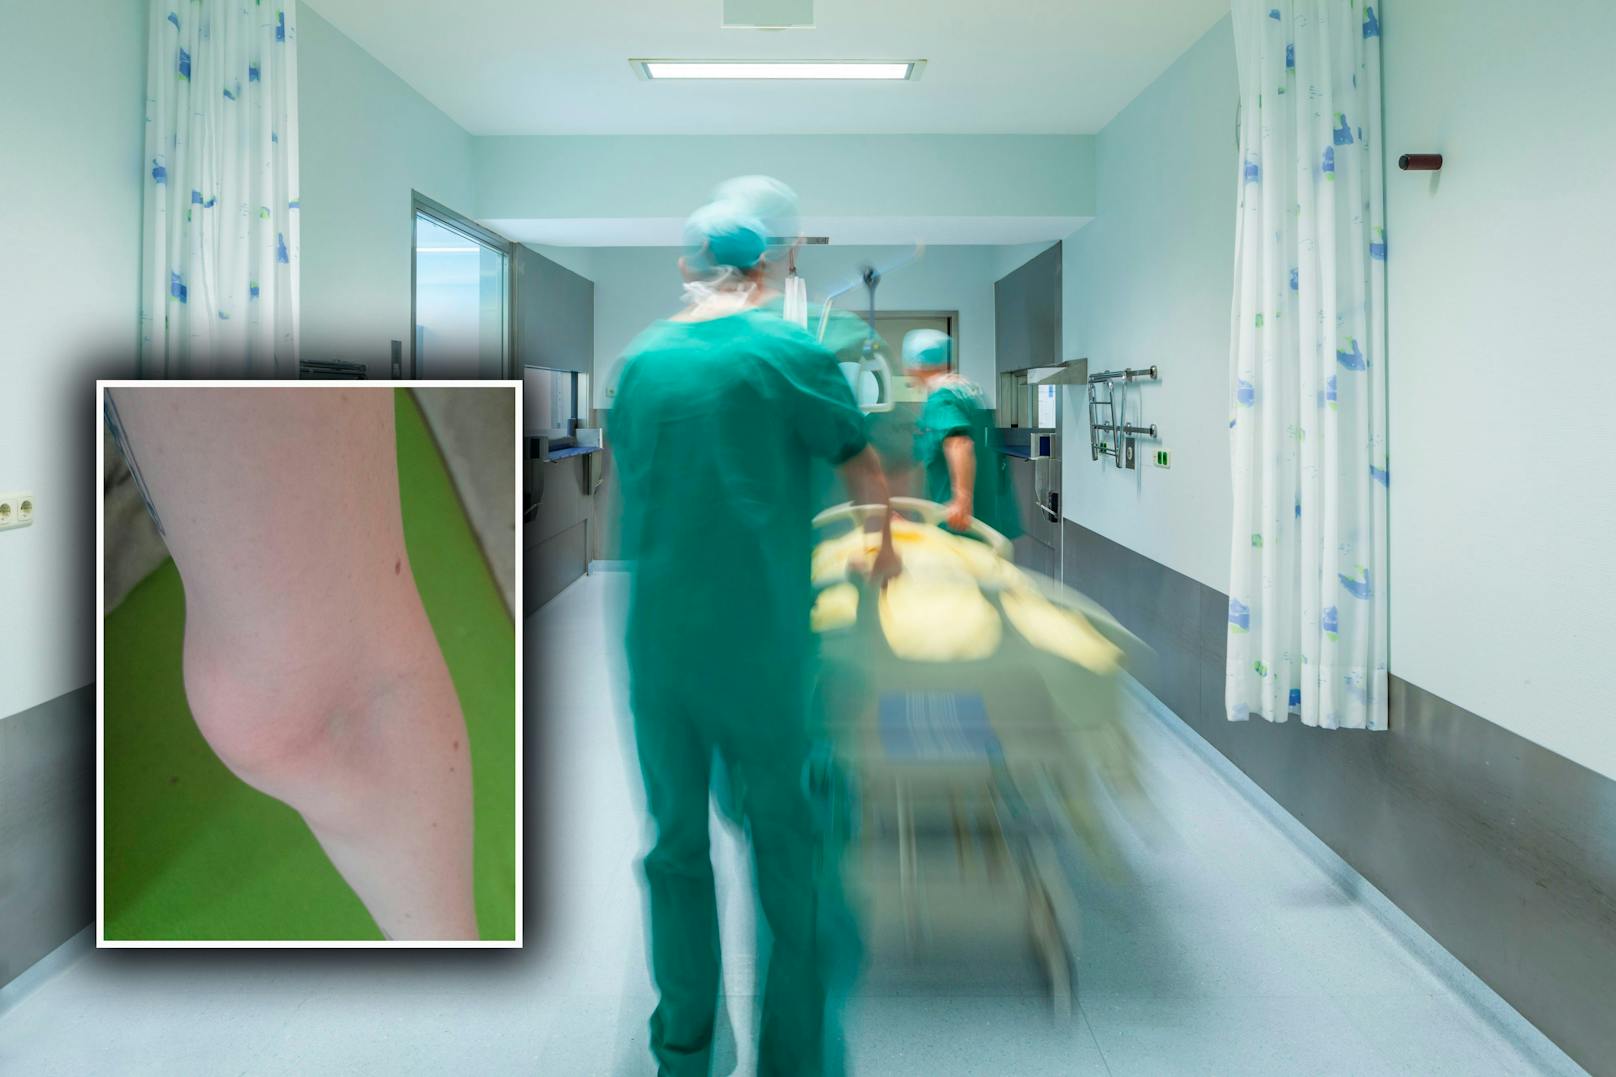 Tumor am Arm: Wienerin wartet seit Wochen auf Operation